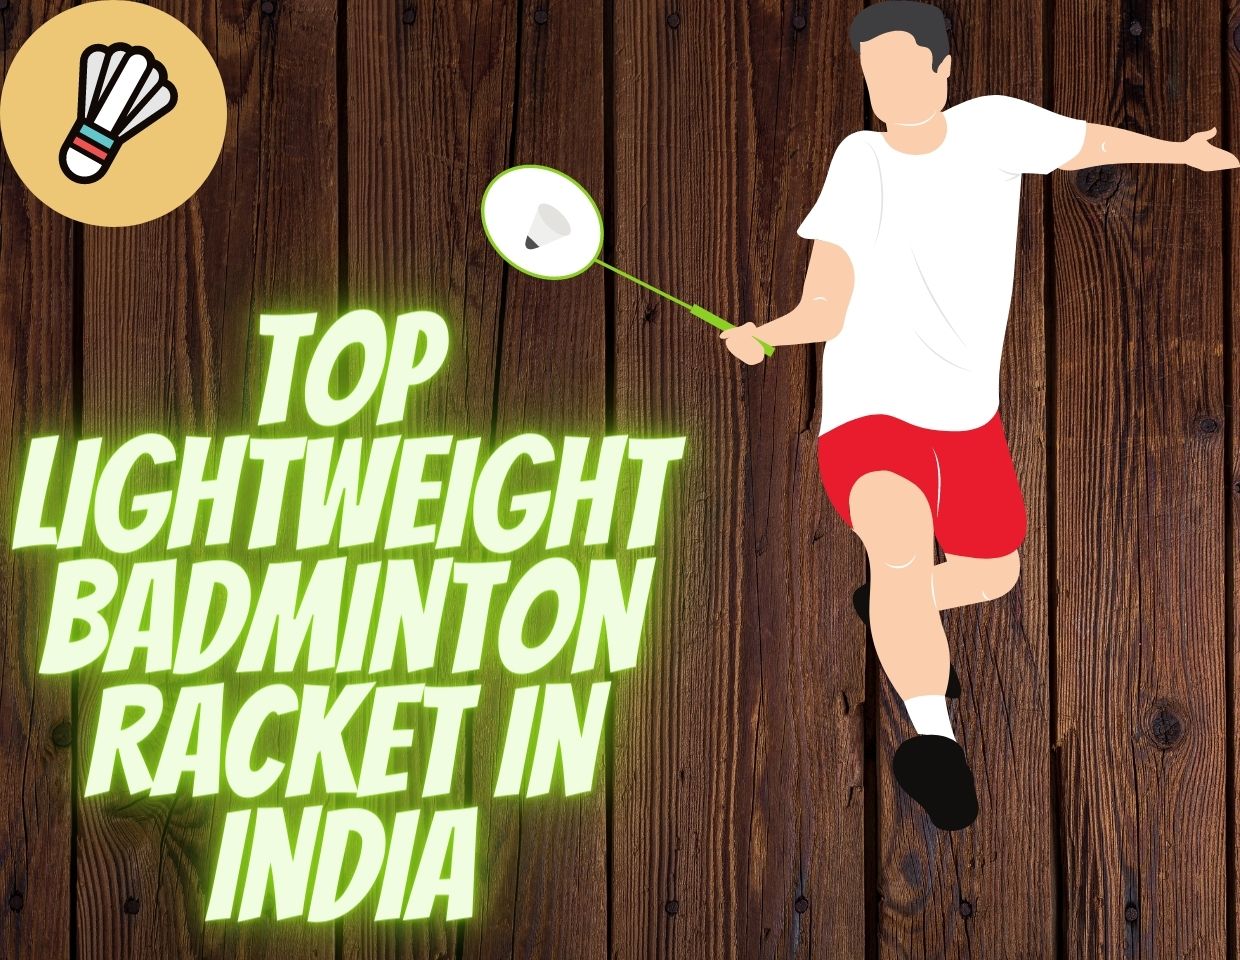 Top Lightweight Badminton Racket in India (1)